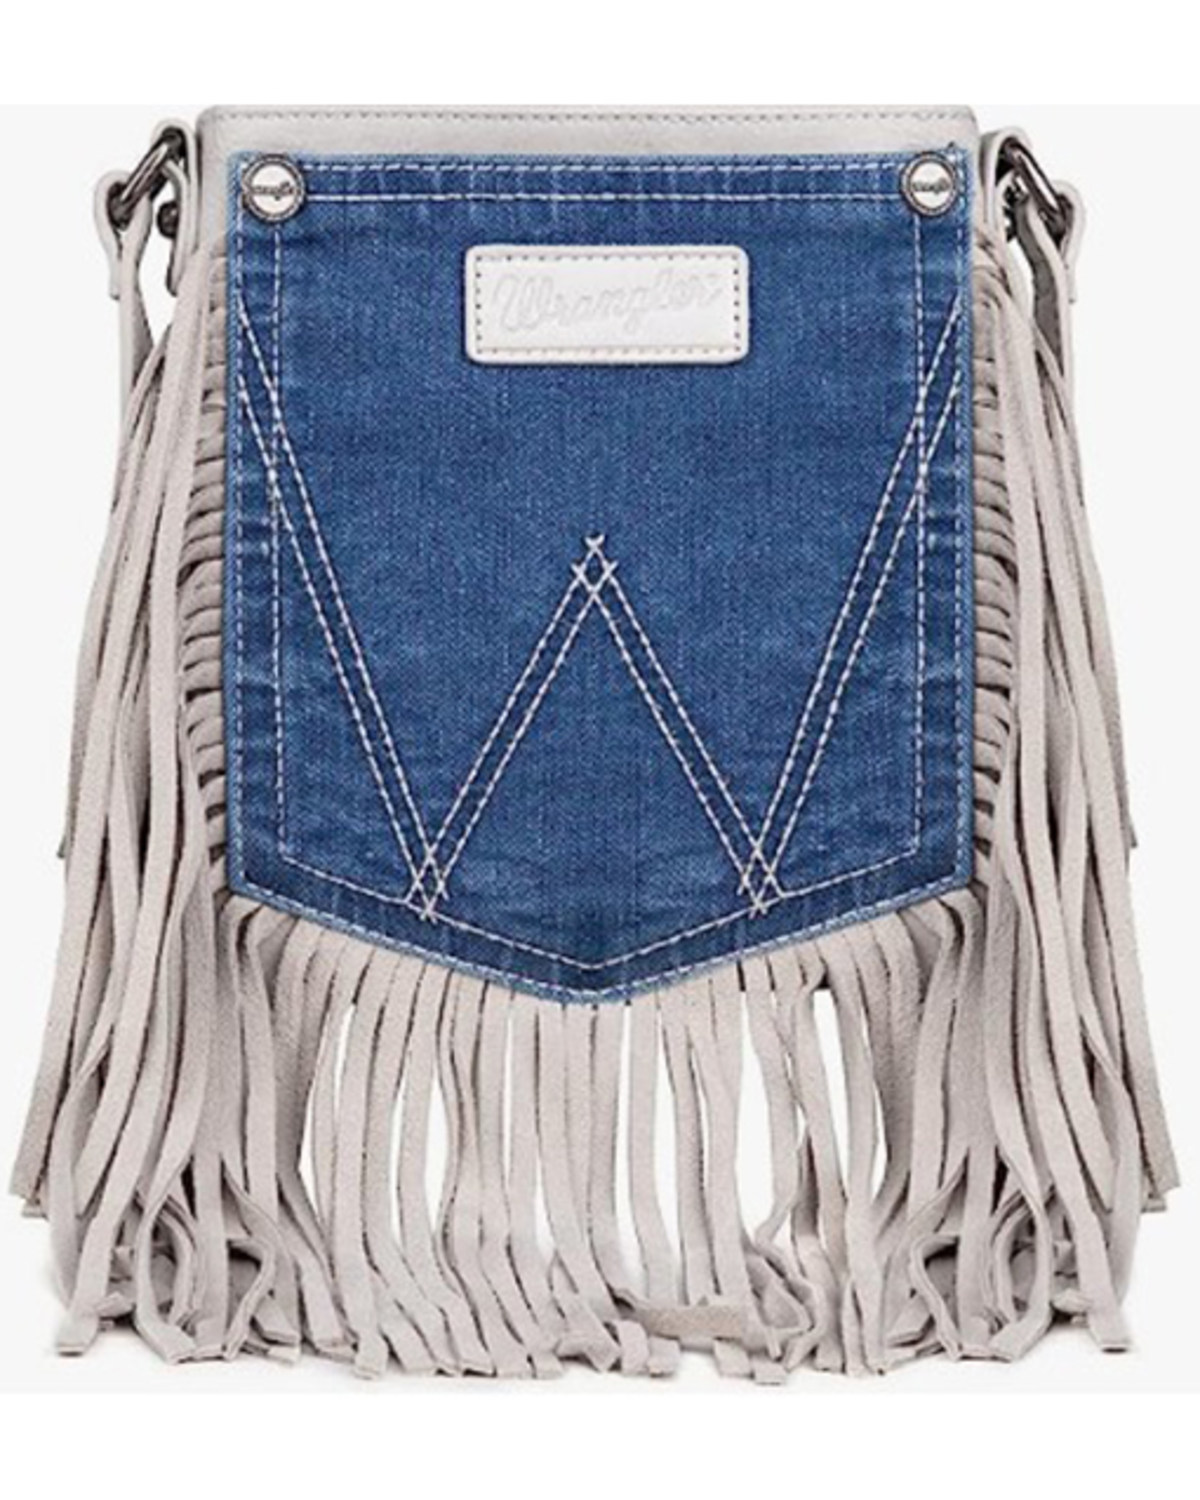 Wrangler Women's Leather Fringe Denim Jean Pocket Crossbody Bag